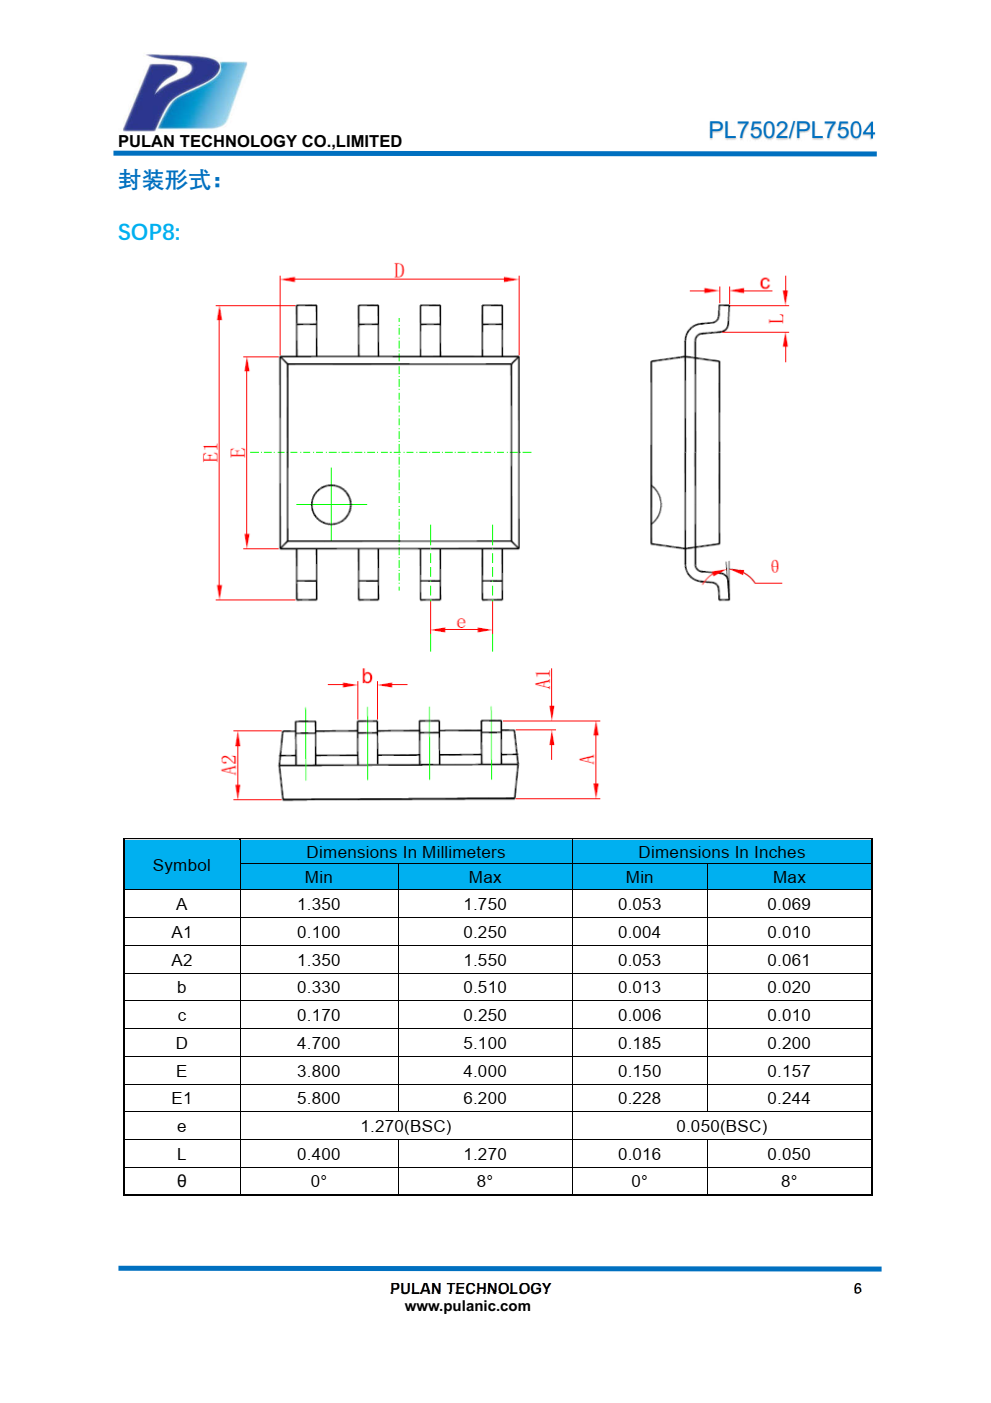 PL7502/PL7504 是一款集成锂电池充电管理、同步升压转换器、电池电量管理和保护功能的 指示灯蓝牙充电座 SOC